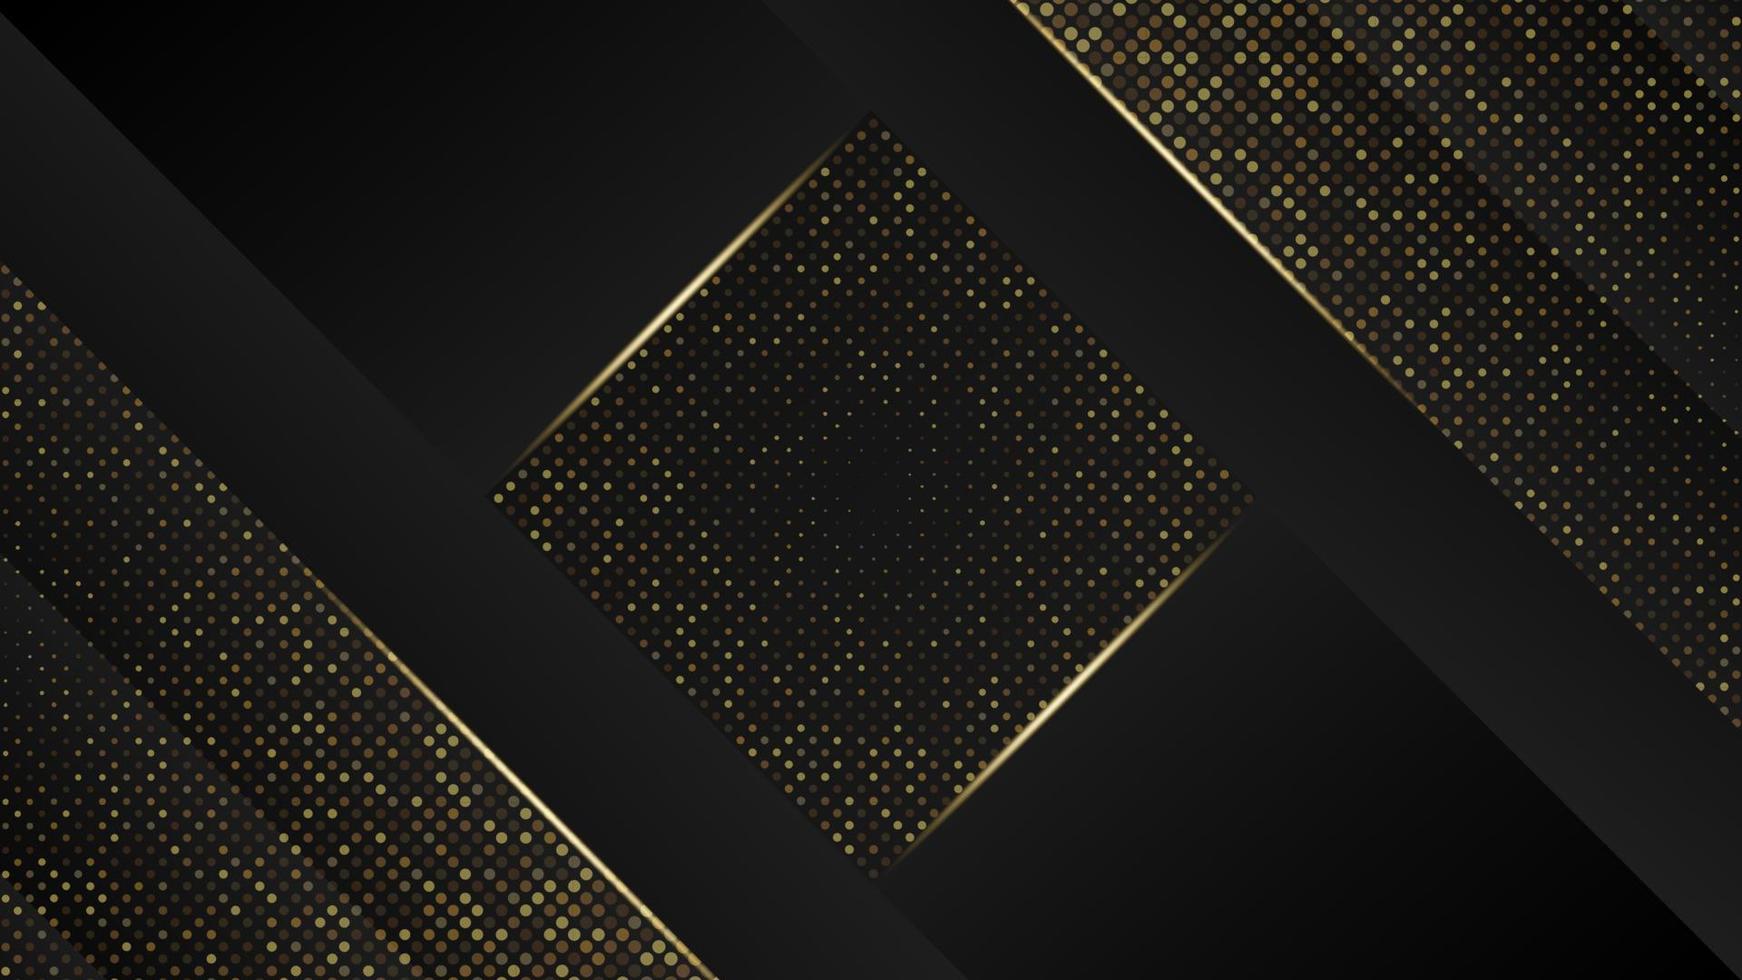 Minimalist Luxury Background Template. Modern Dark Grey and Gold Background vector